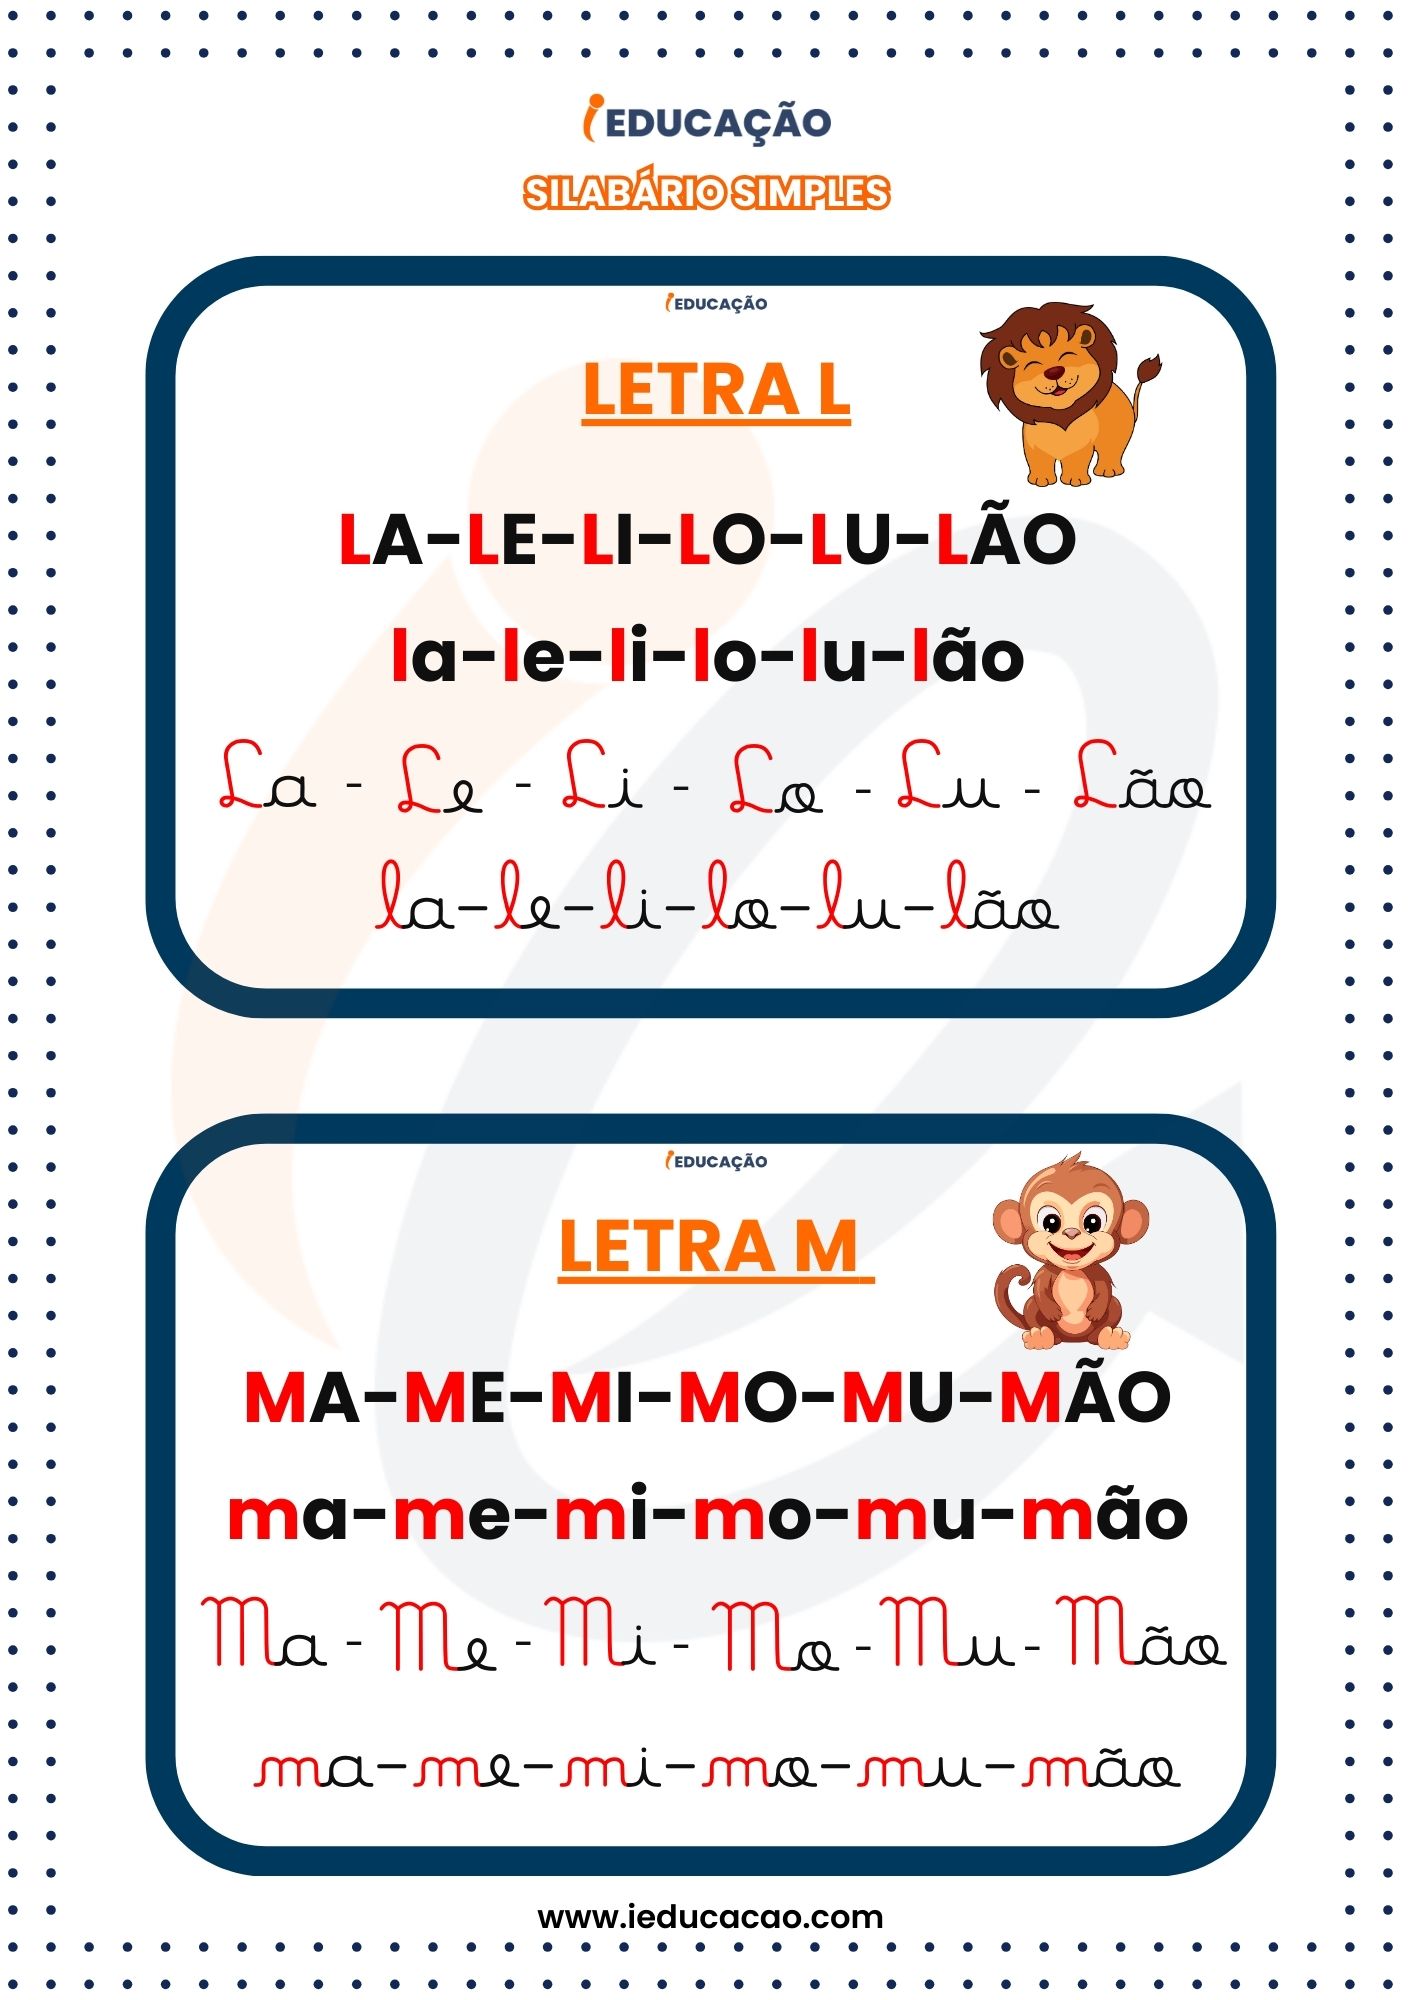 Silabário Simples Quatros Tipos de Letras L E M